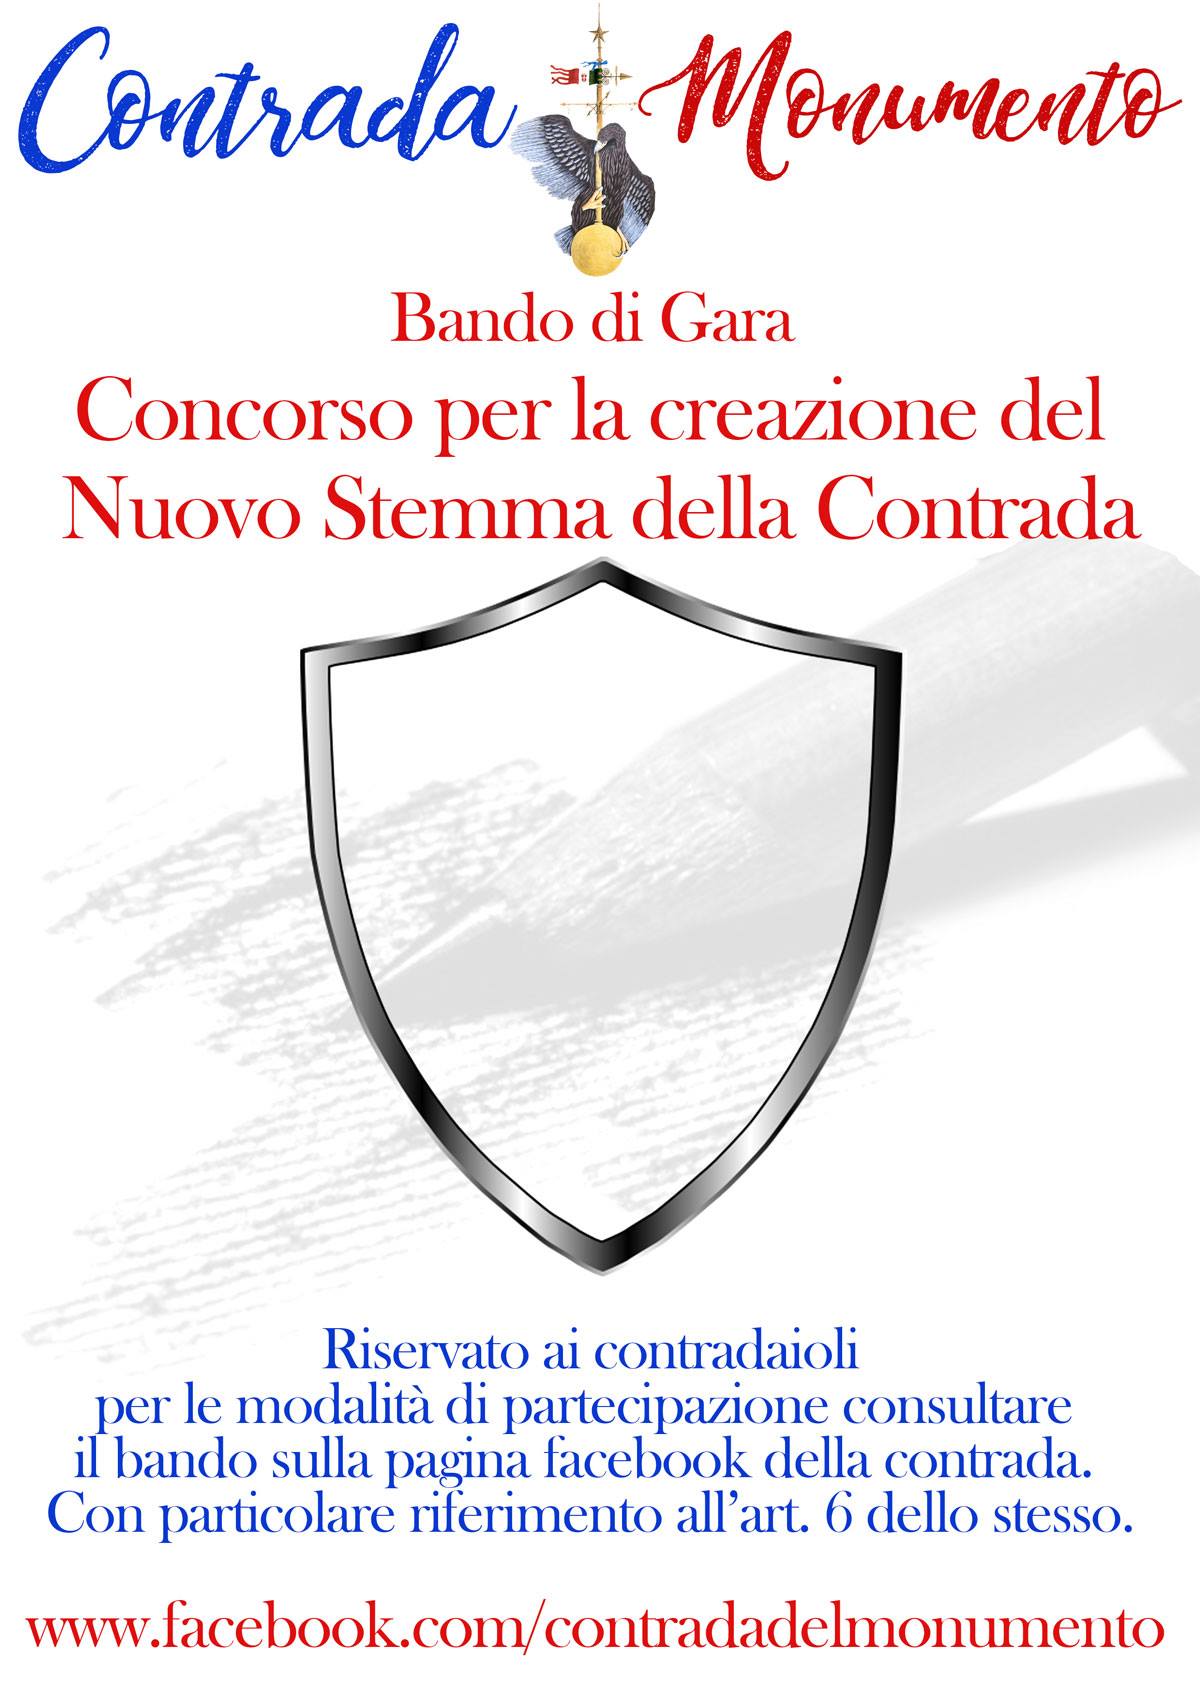 Castel del Piano: il Monumento indice un concorso per la creazione del nuovo Stemma